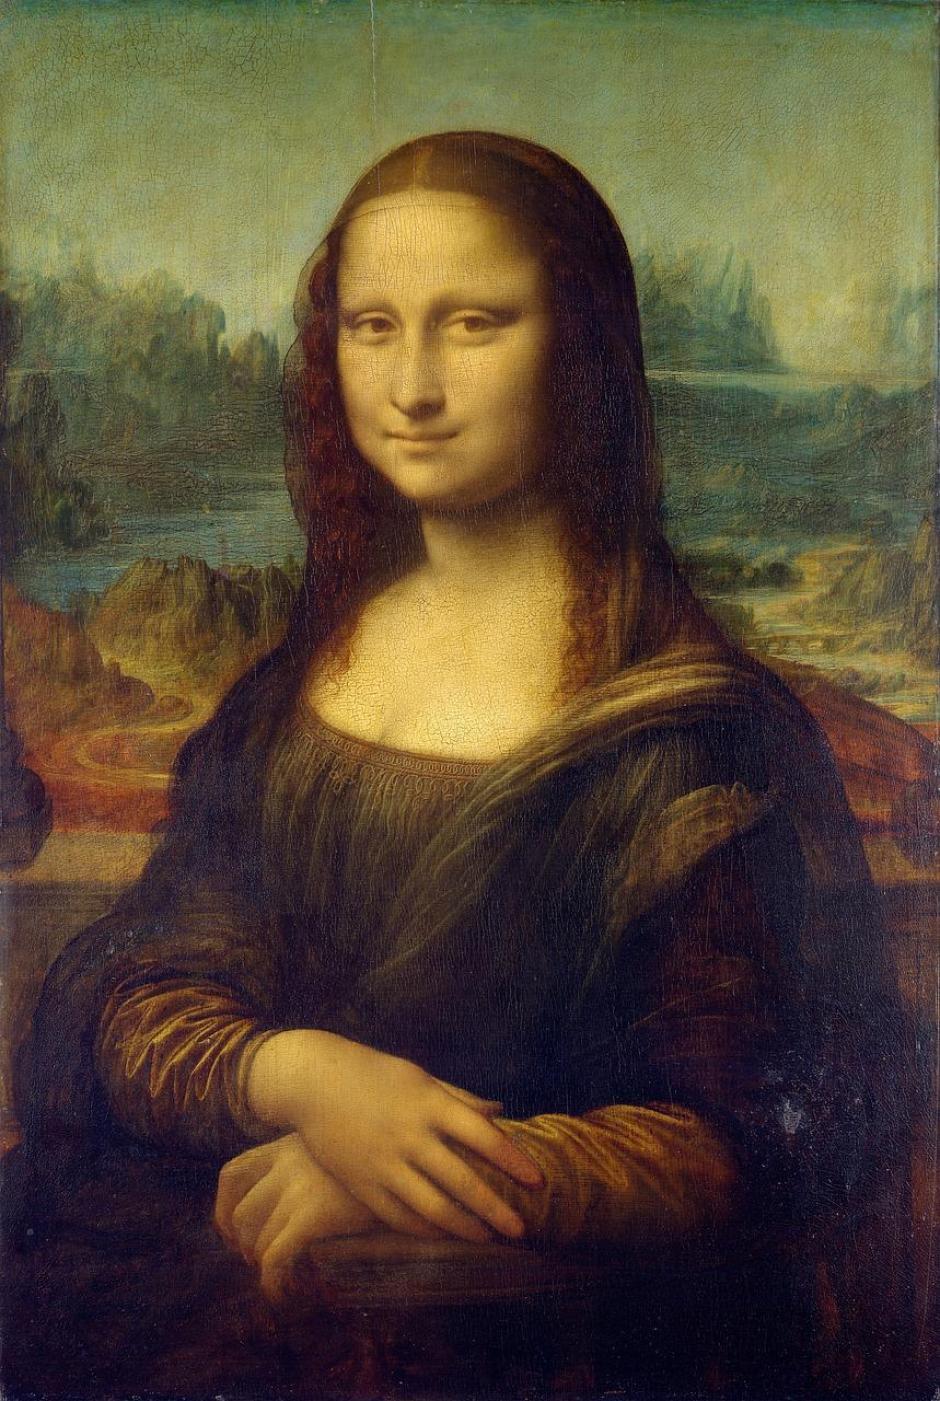 La Gioconda, Leonardo Da Vinci